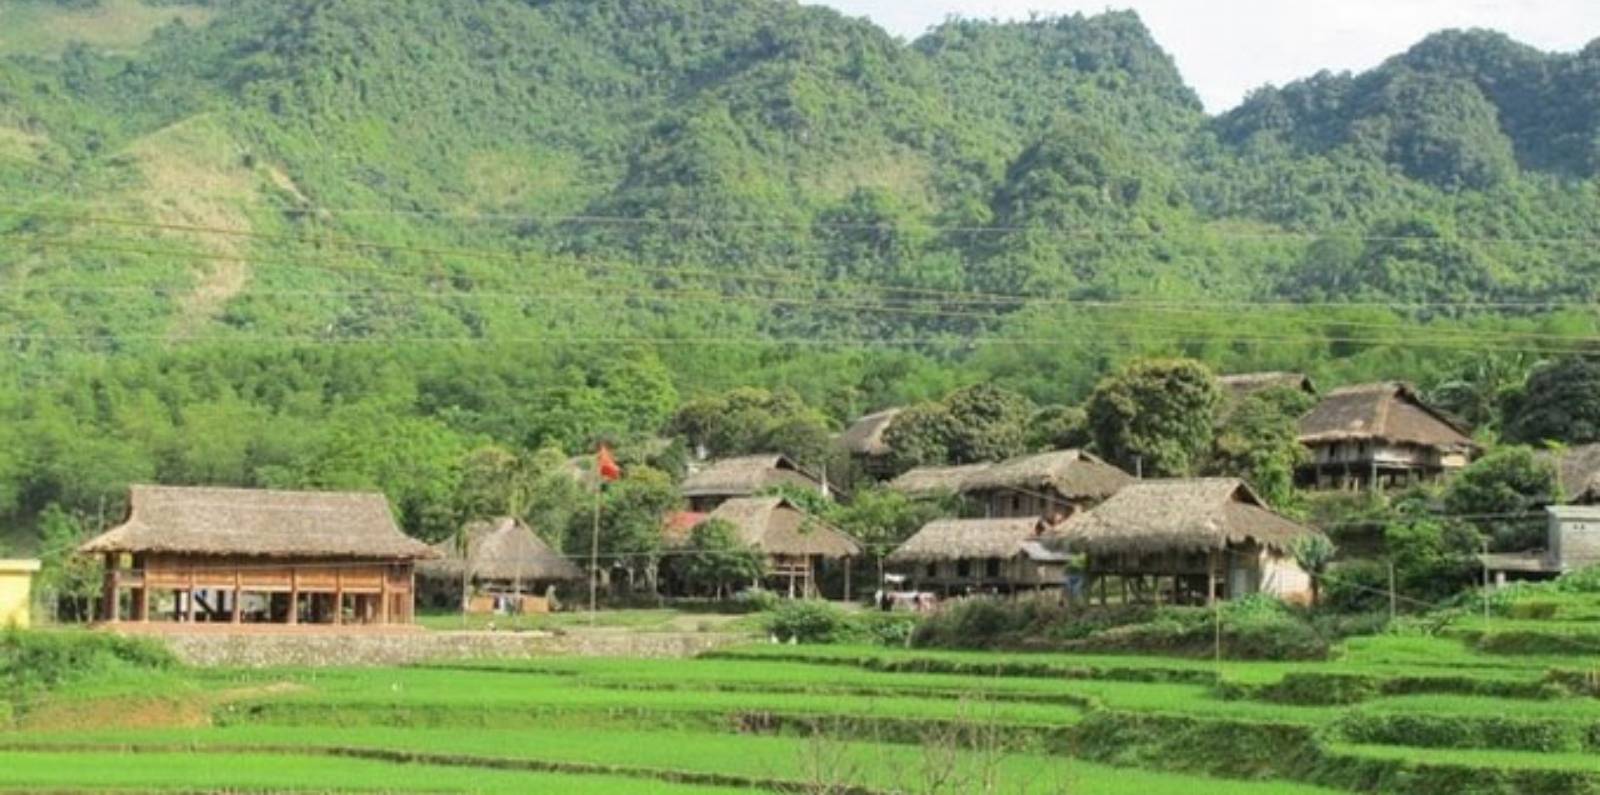 Giang Mo Village